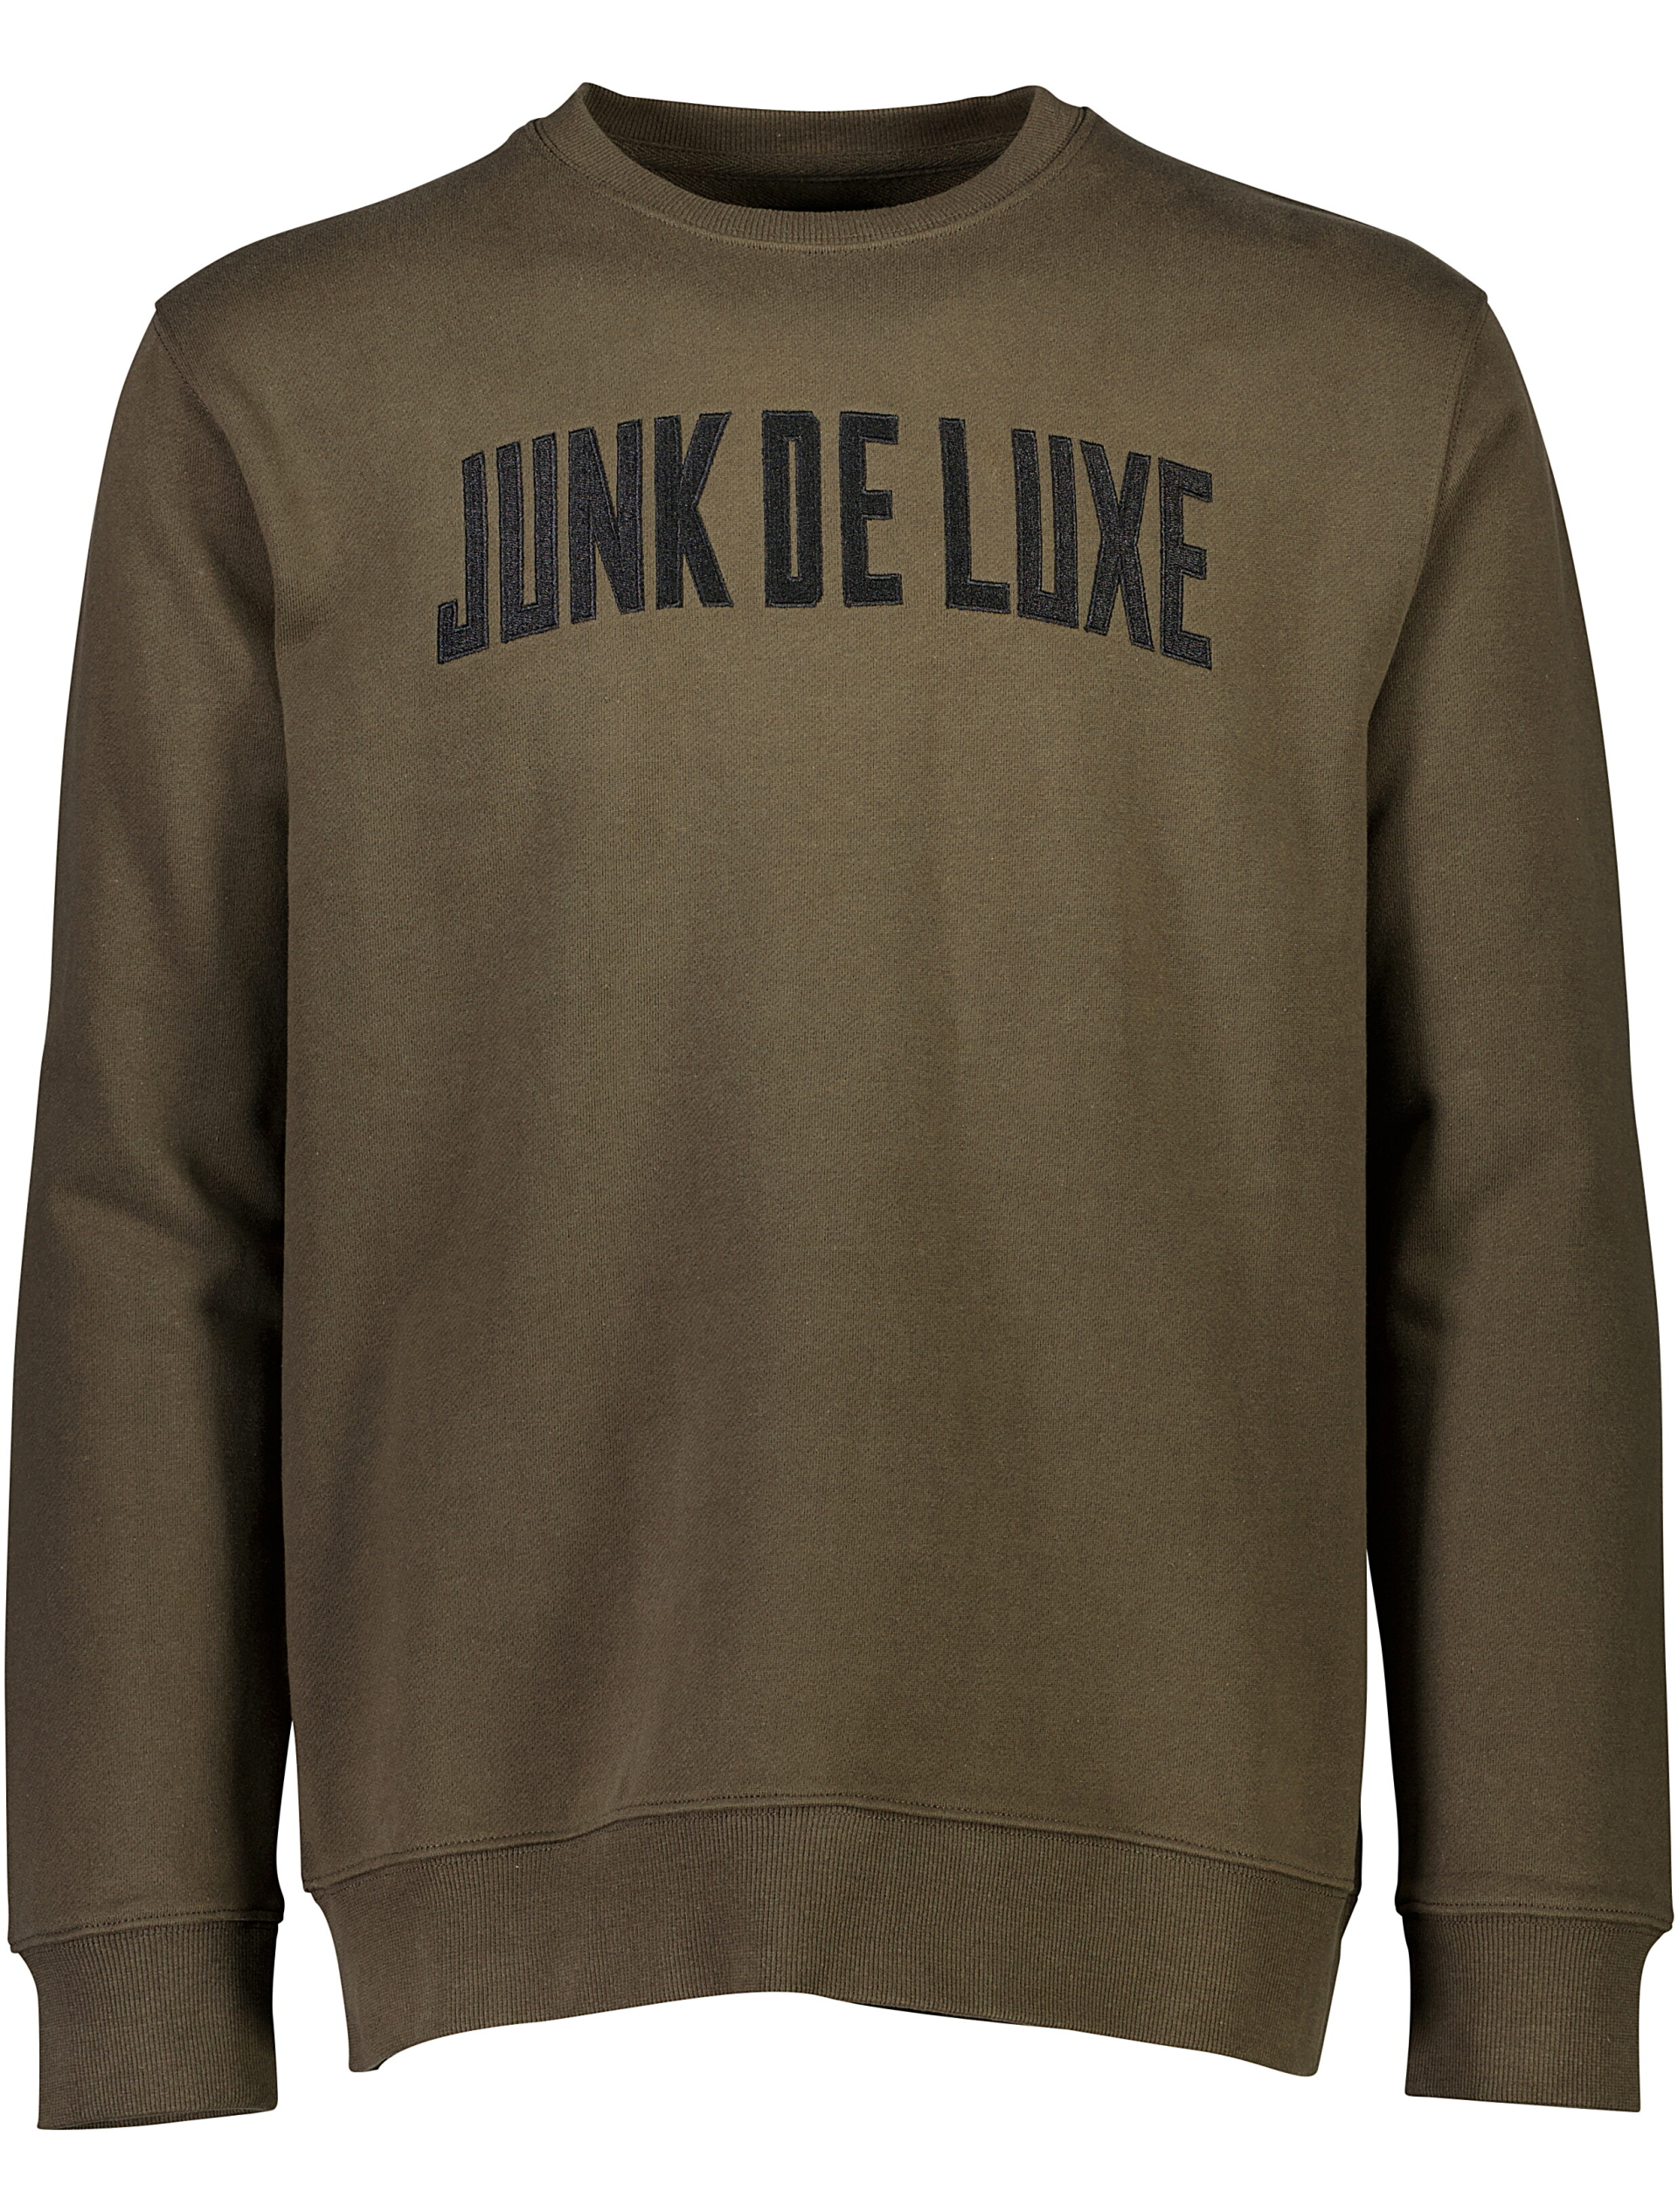 Junk de Luxe Sweatshirt grön / black olive